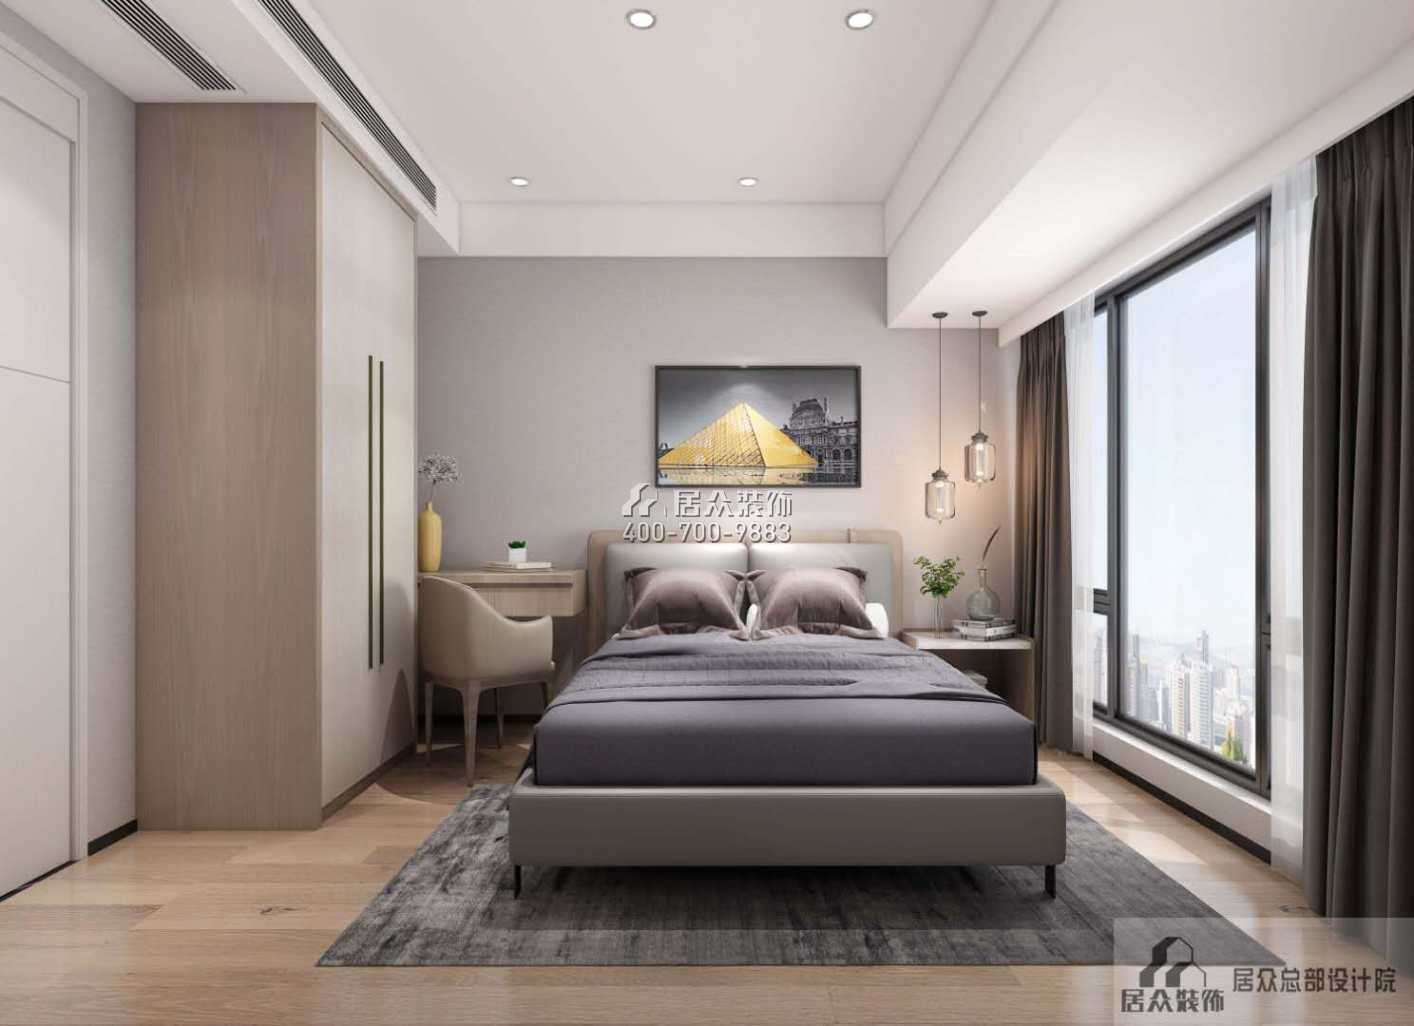 合正觀瀾匯165平方米現代簡約風格平層戶型臥室裝修效果圖